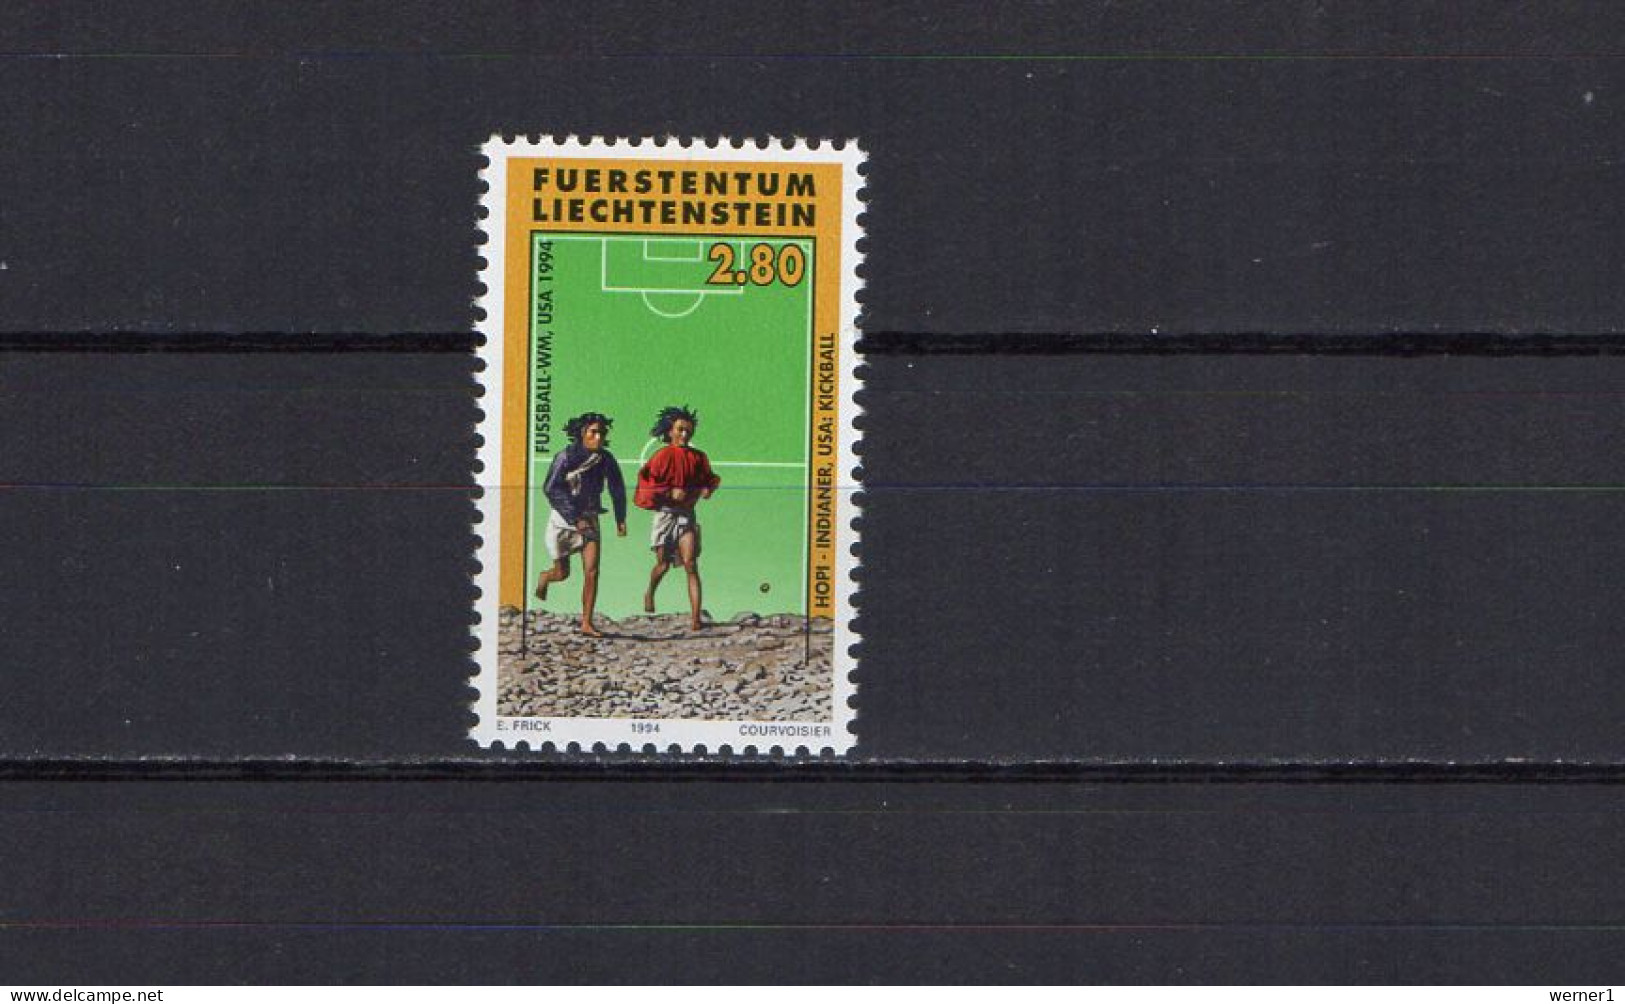 Liechtenstein 1994 Football Soccer World Cup Stamp MNH - 1994 – États-Unis